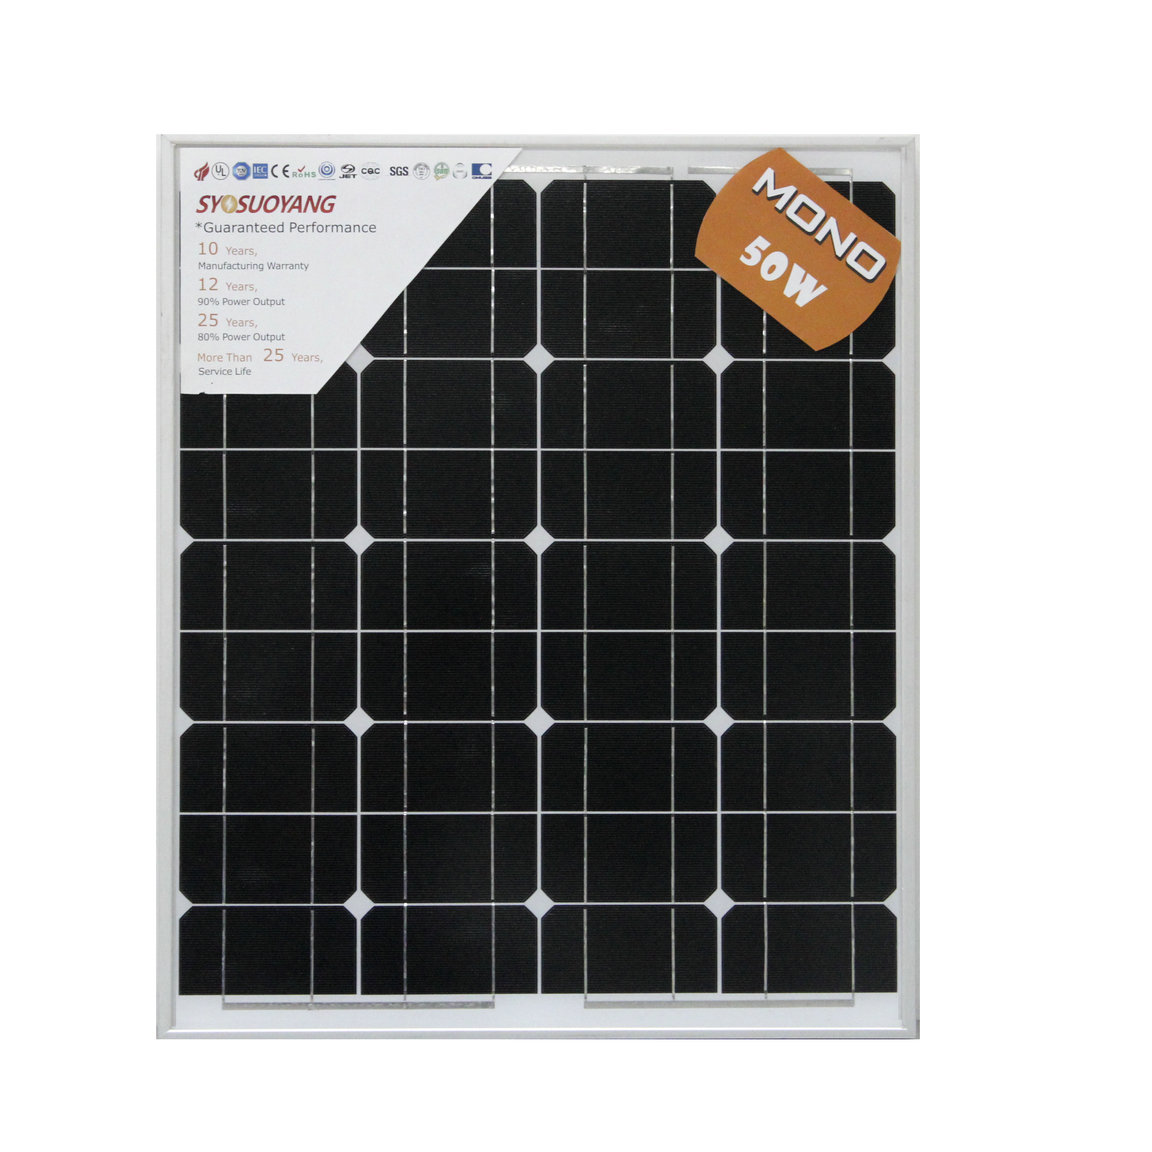 太阳能组件厂家直销质量保证 索阳公司专业生产太阳能组件